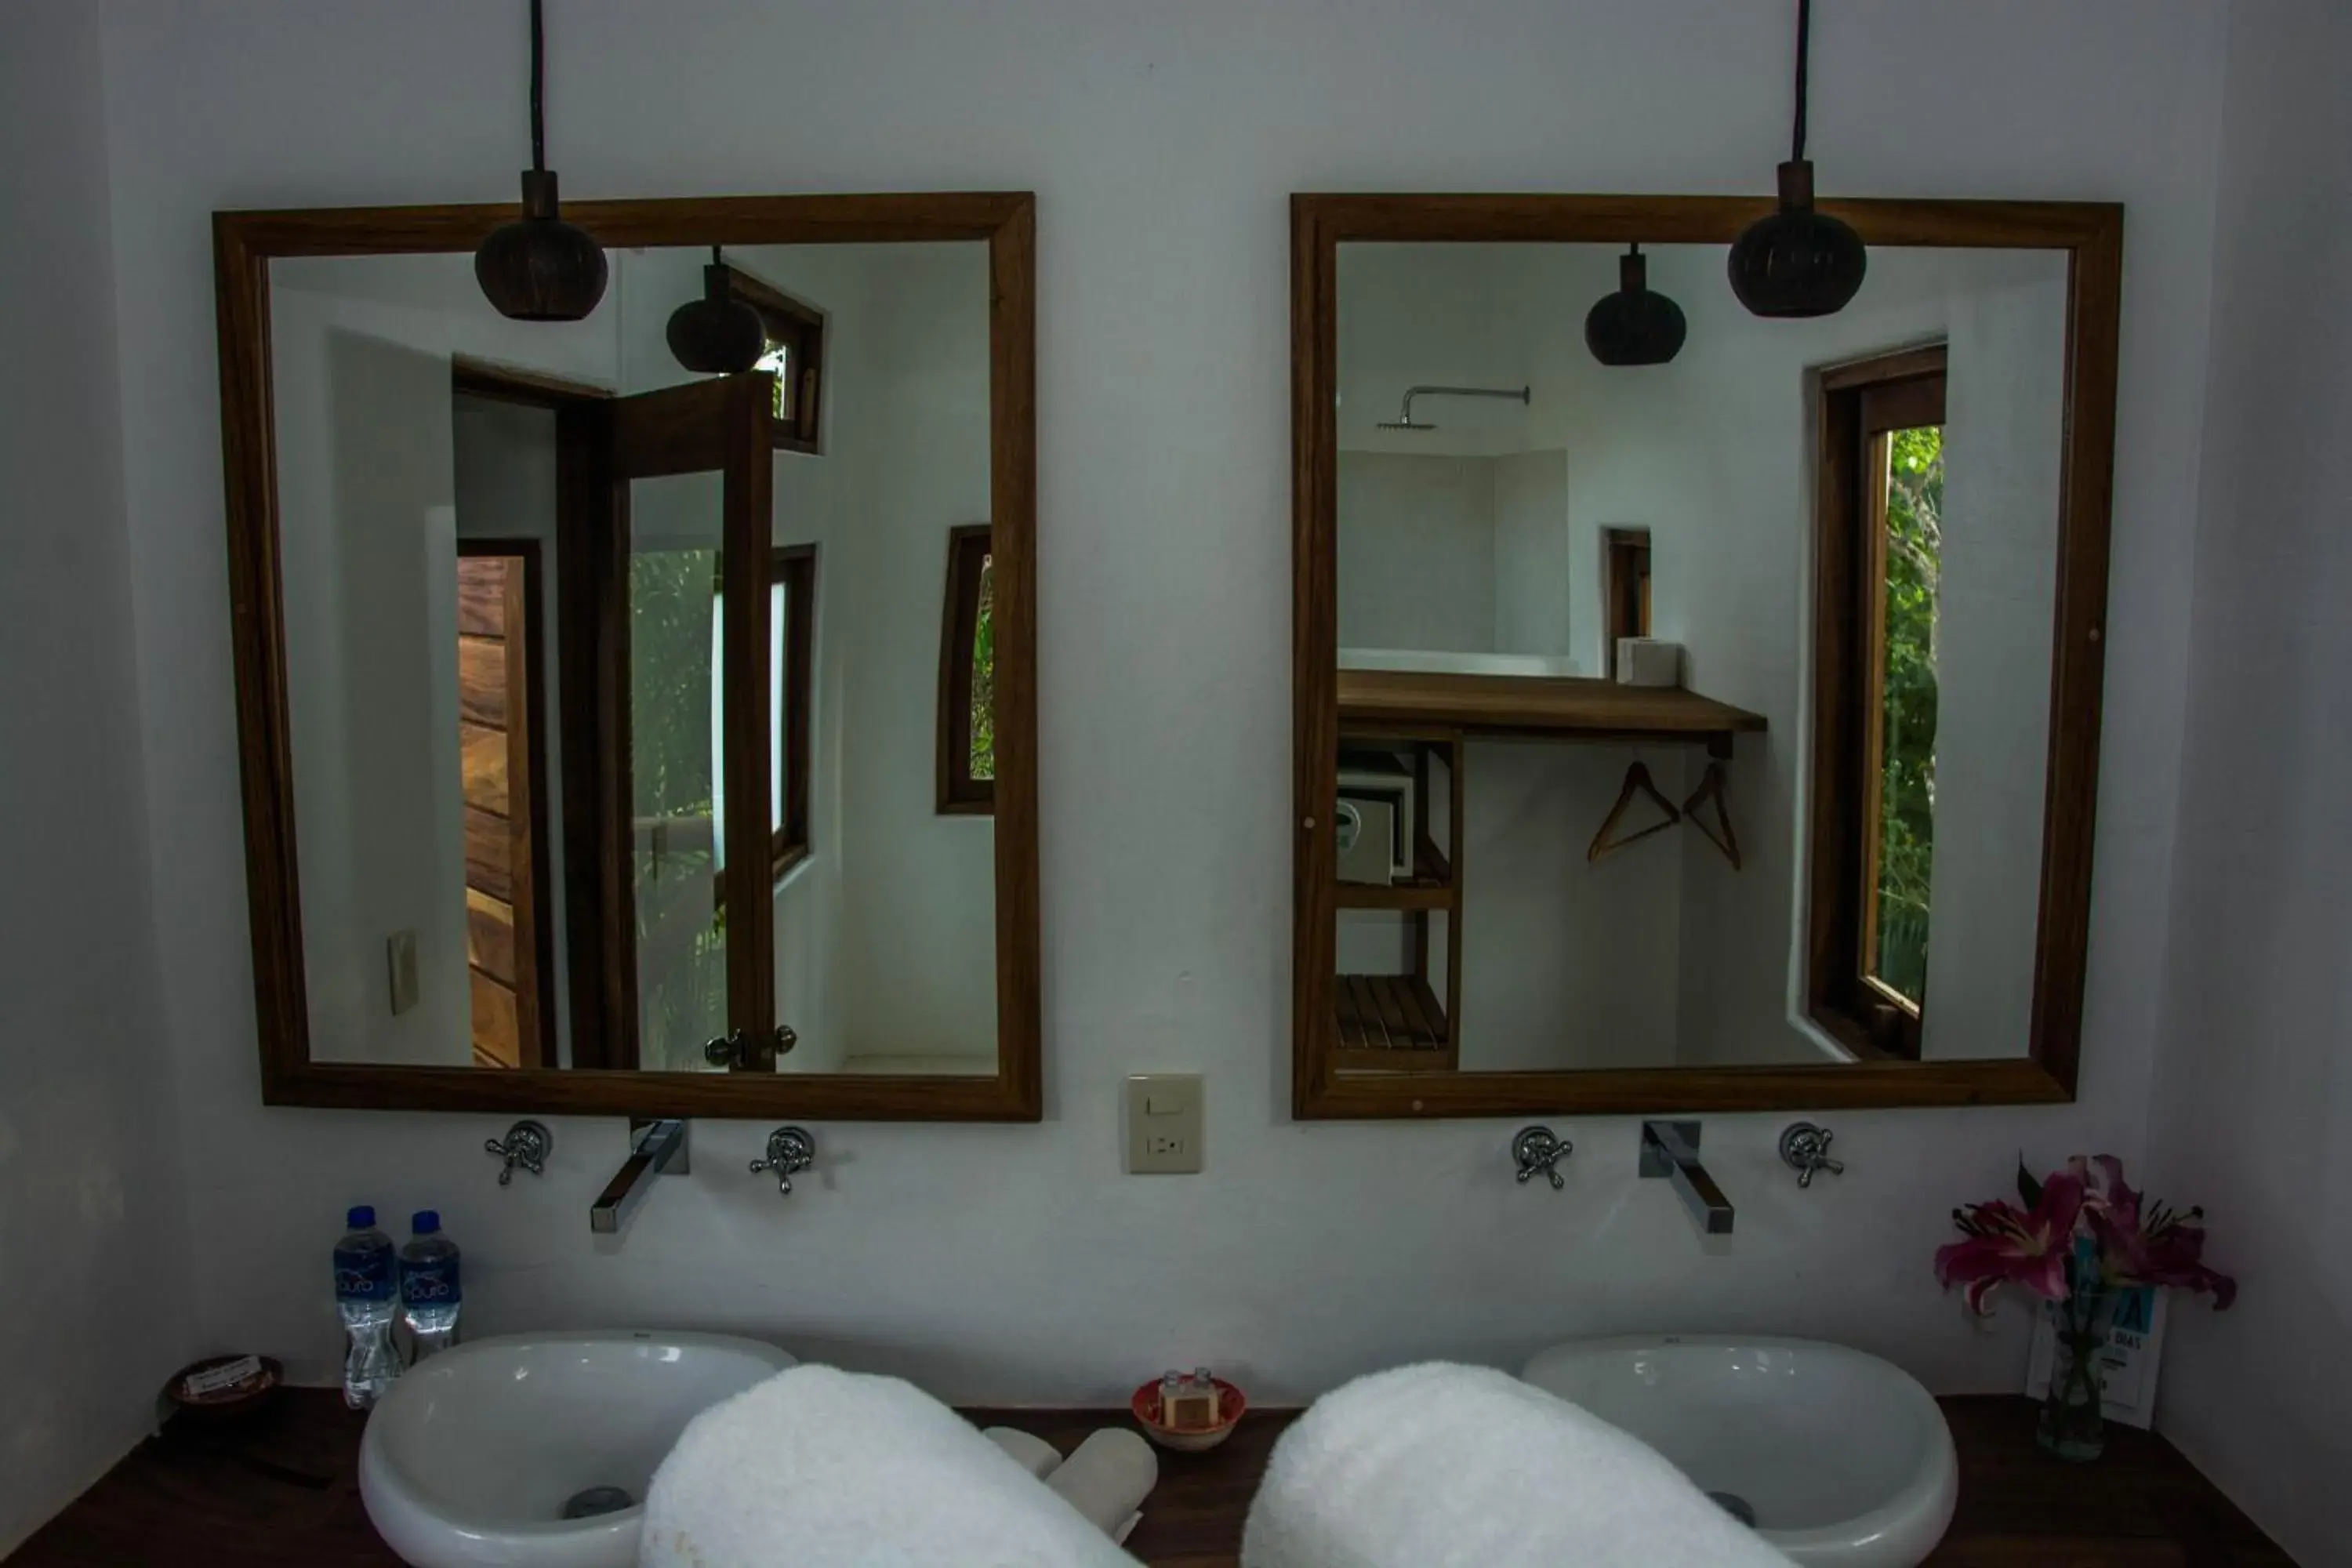 Bathroom in El Alquimista Yoga Spa